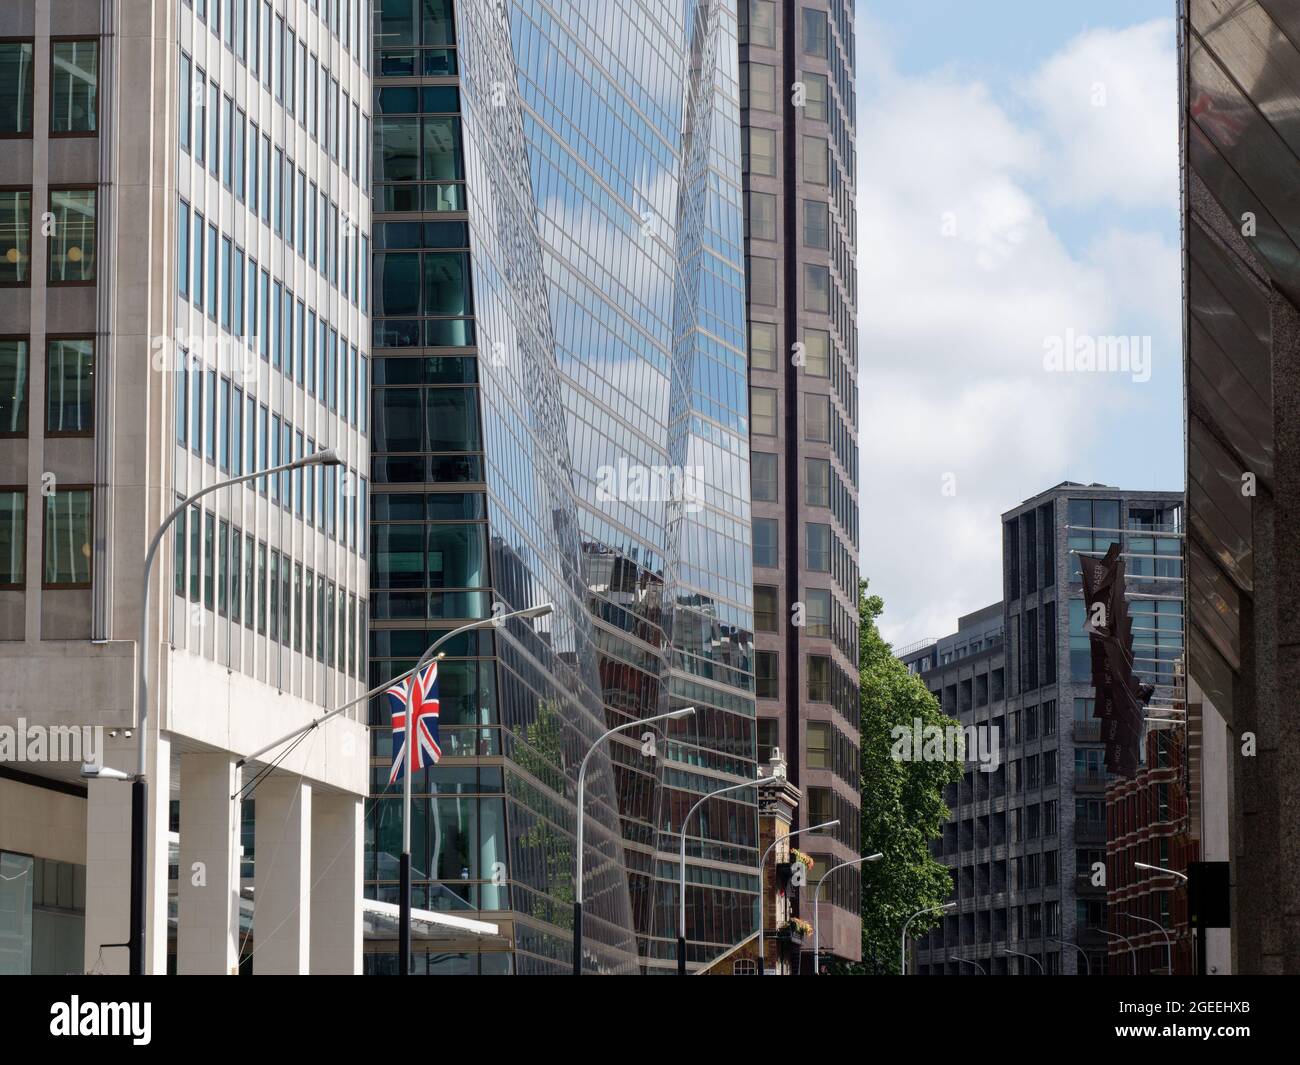 London, Greater London, England, August 10 2021: Nahaufnahme eines Gebäudes mit Glasfassade in der Victoria Street, in der der Union Jack fliegt. Stockfoto